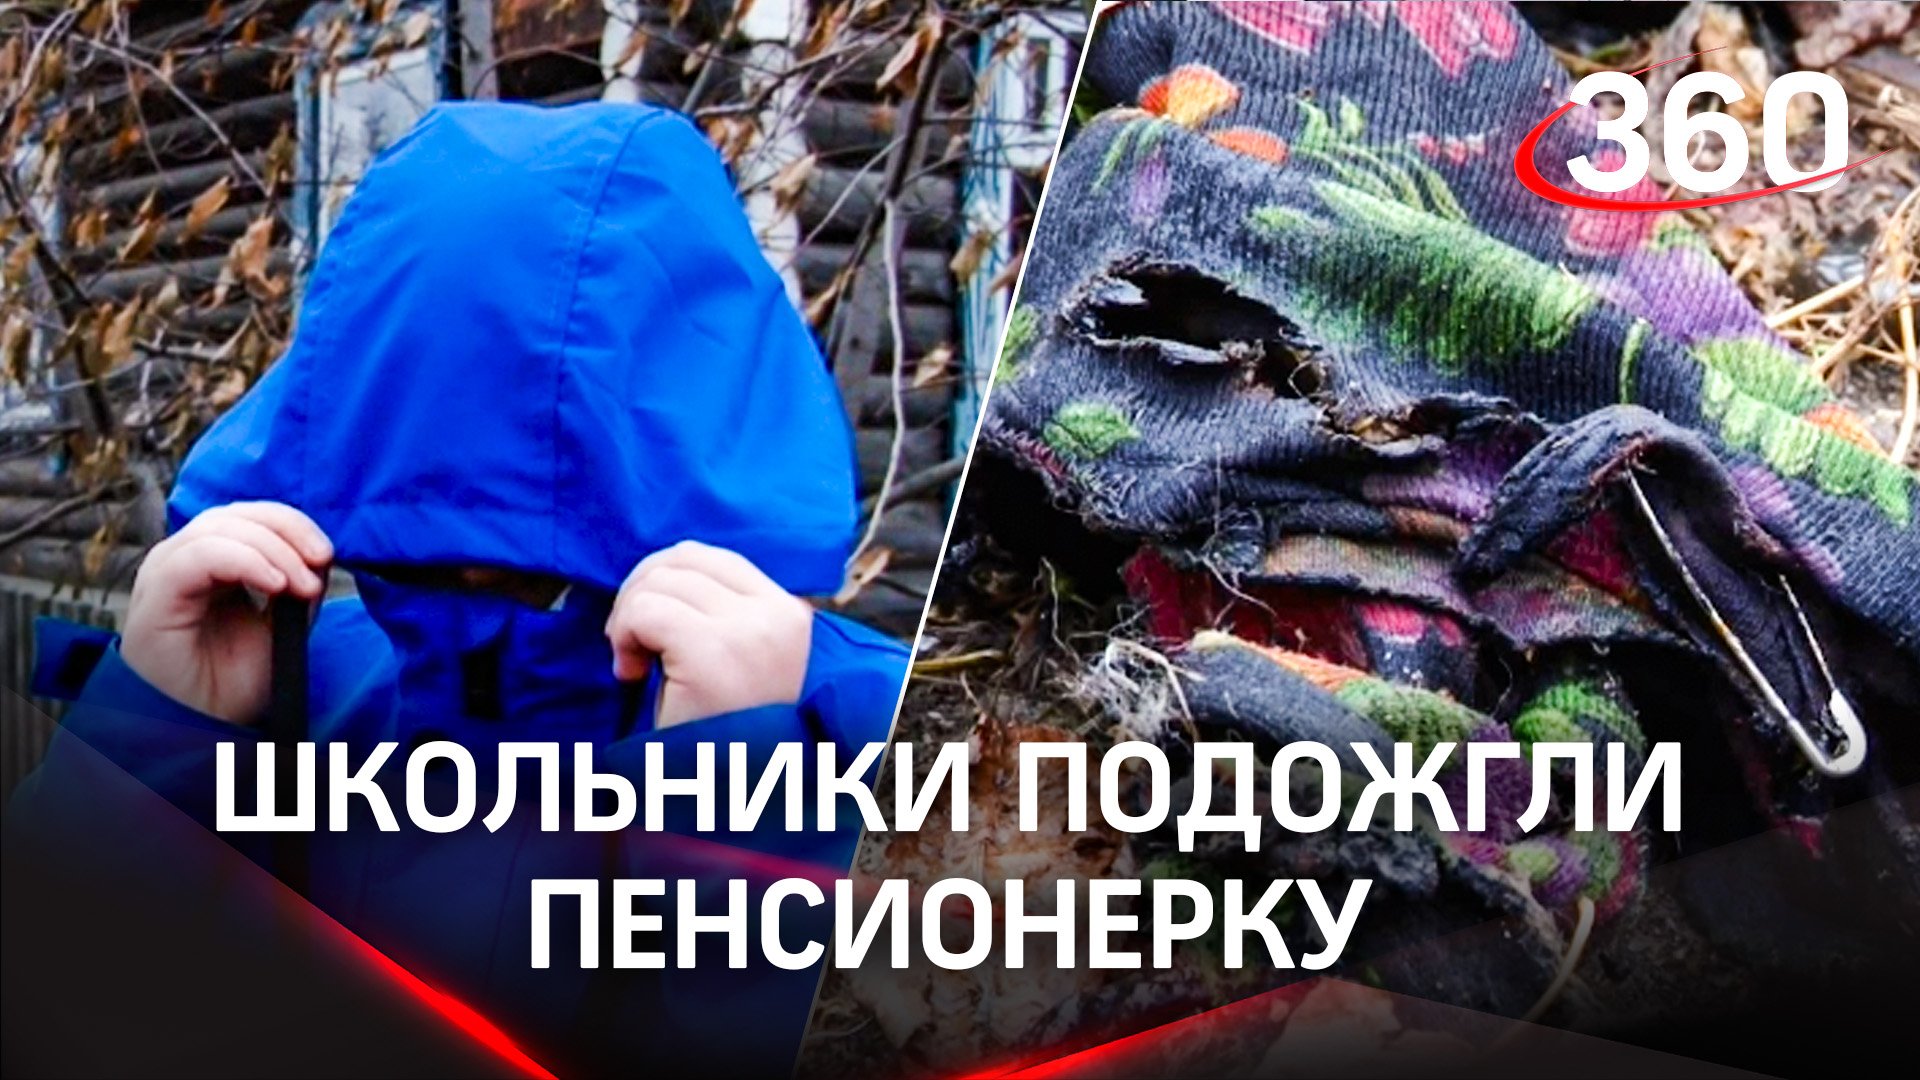 Школьники подожгли пенсионерку под Свердловском, она погибла